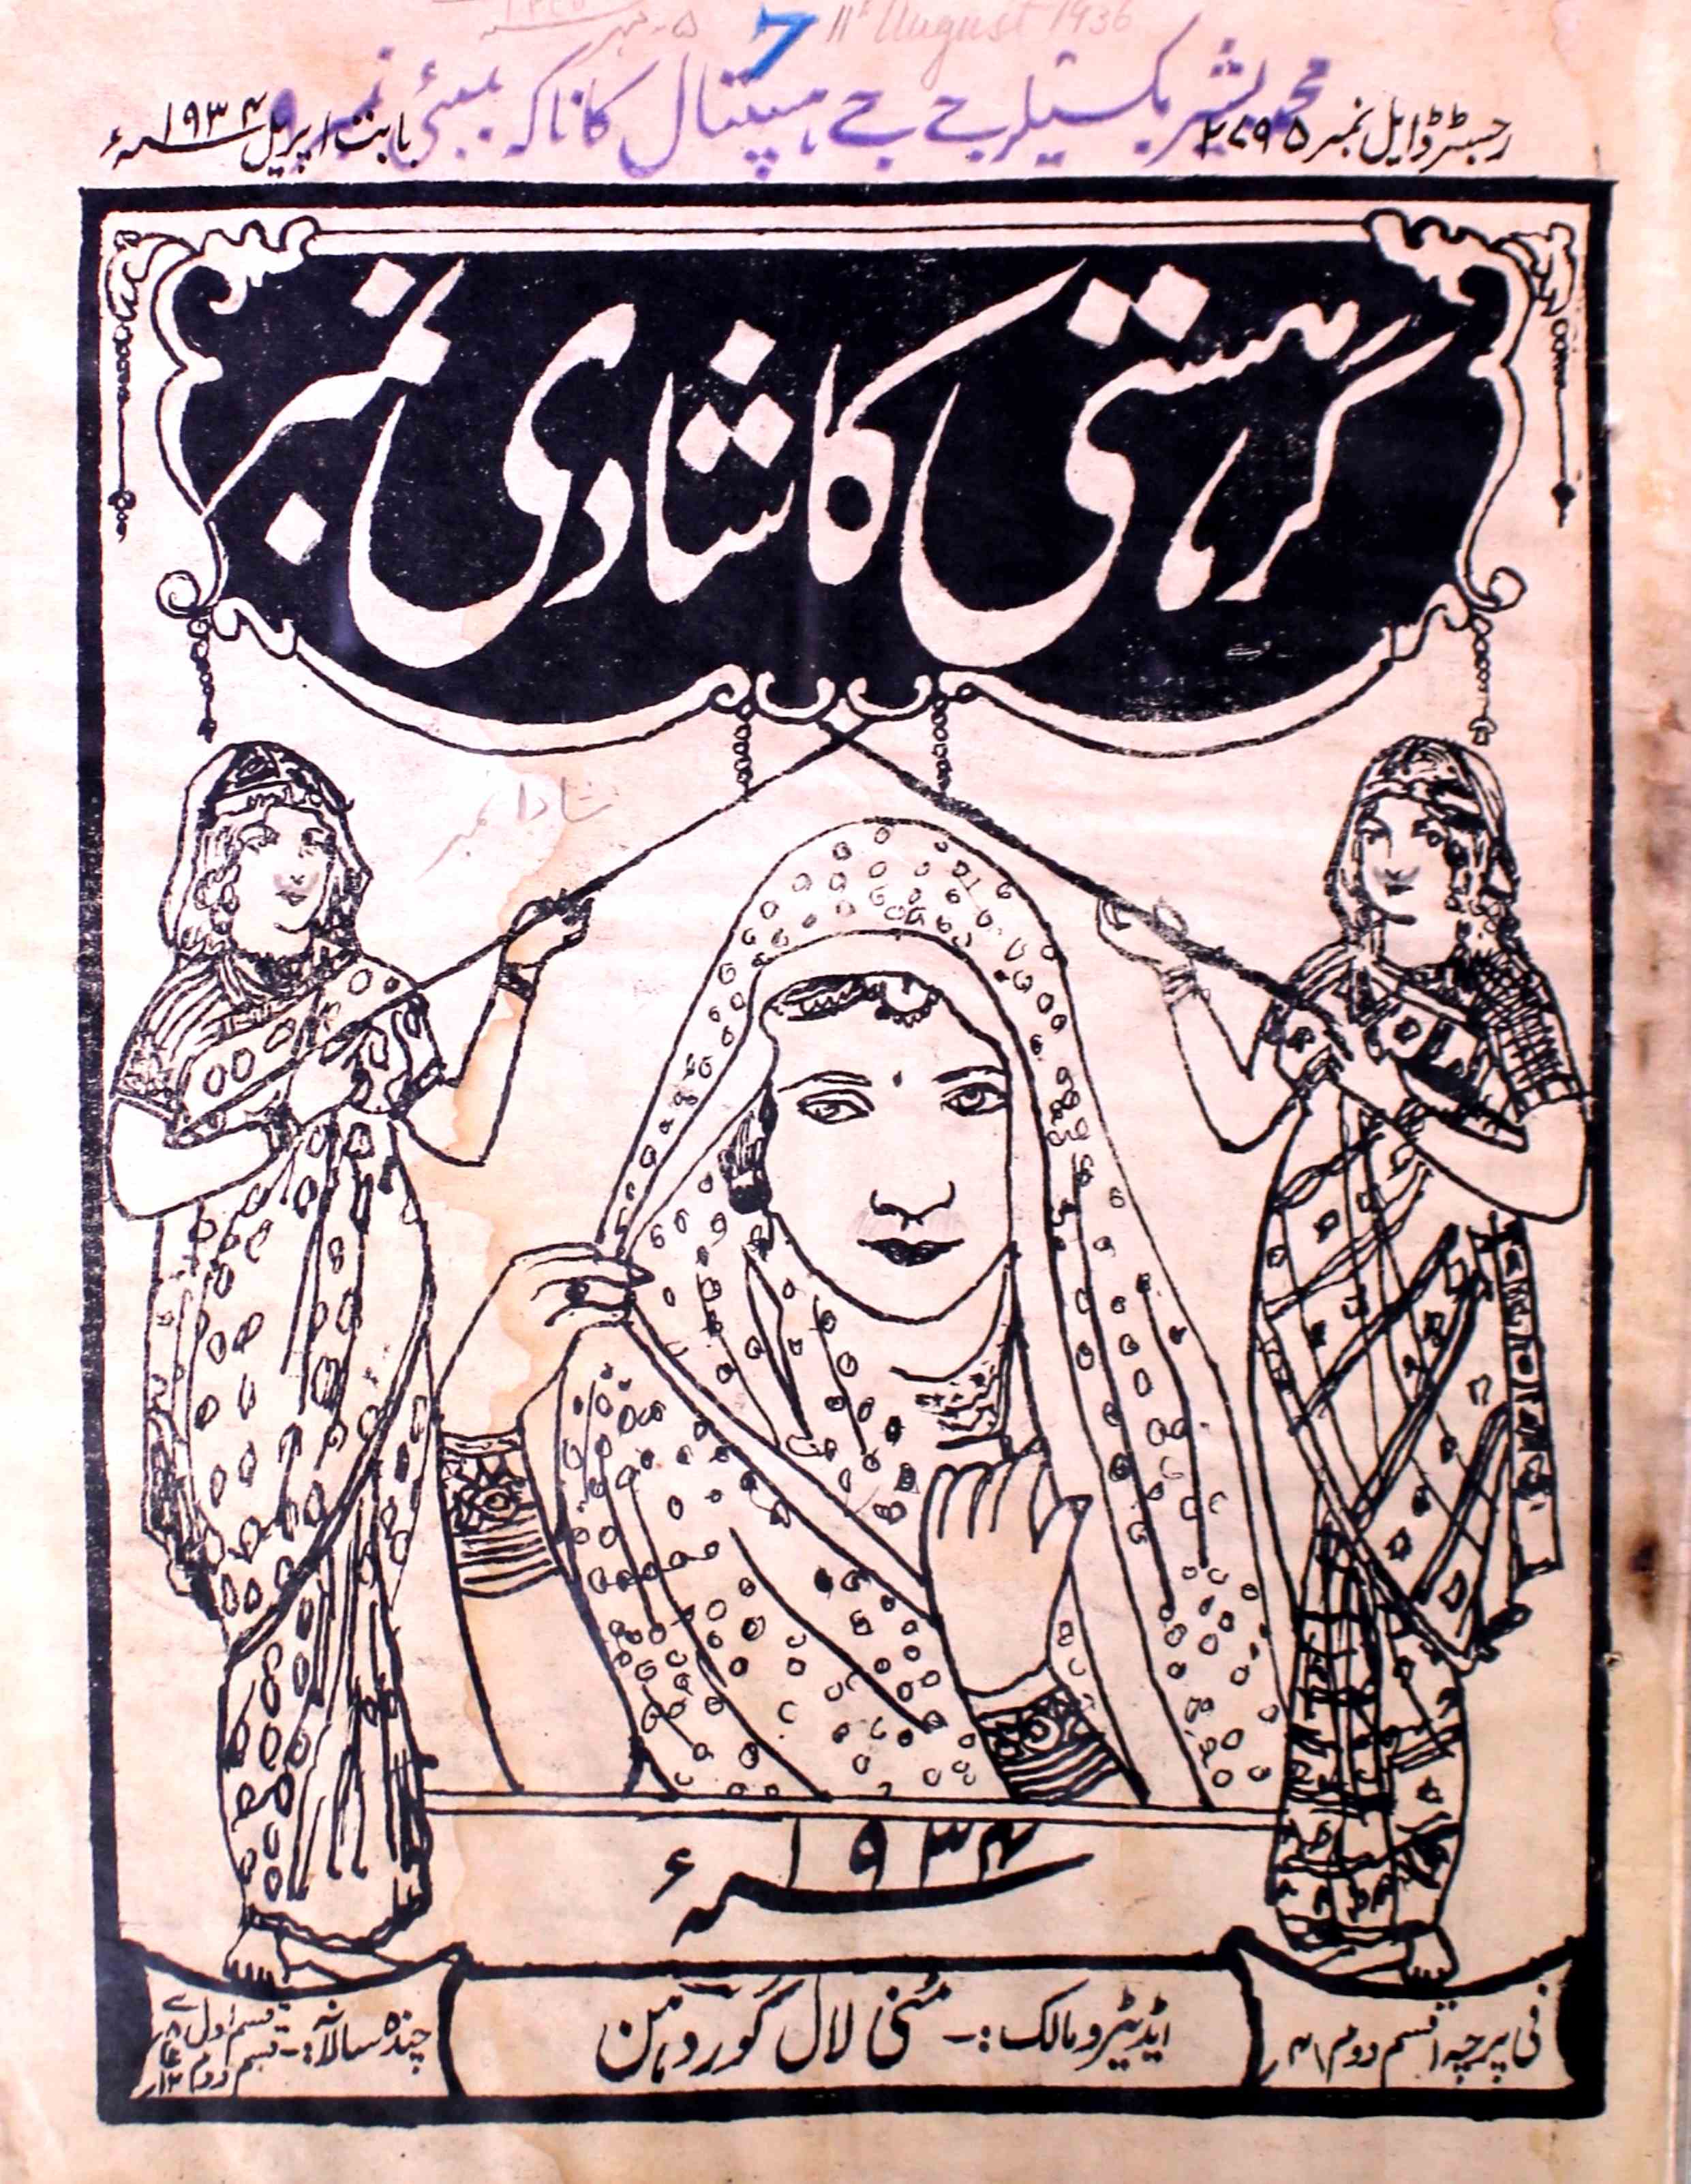 Garhisti Jild 7 No 4 April 1934-SVK